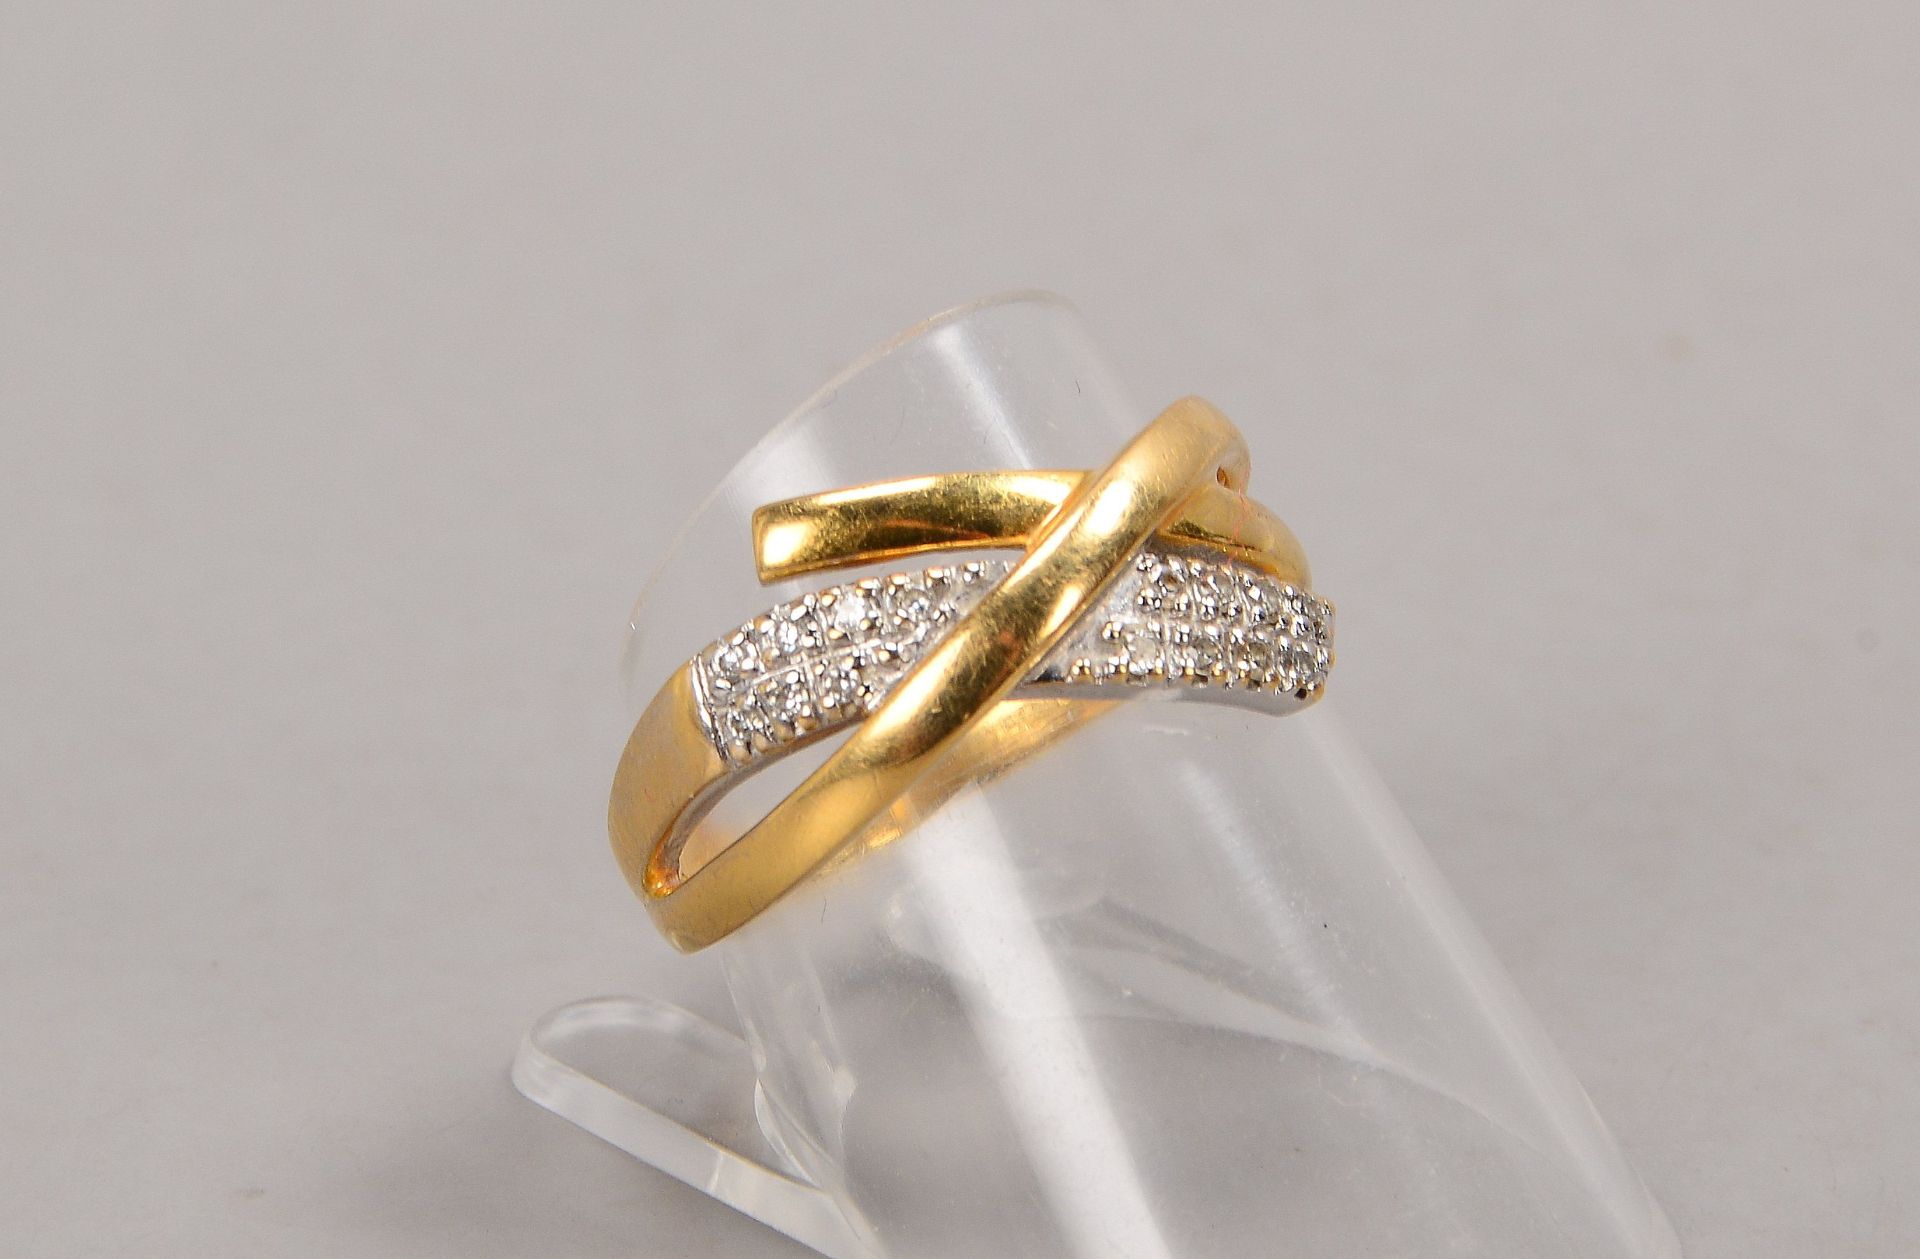 Ring, 750 GG (gestempelt), mit 15-fachem Diamantbesatz/zusammen 0,10 ct; RG 57, Gewicht 3,70 g